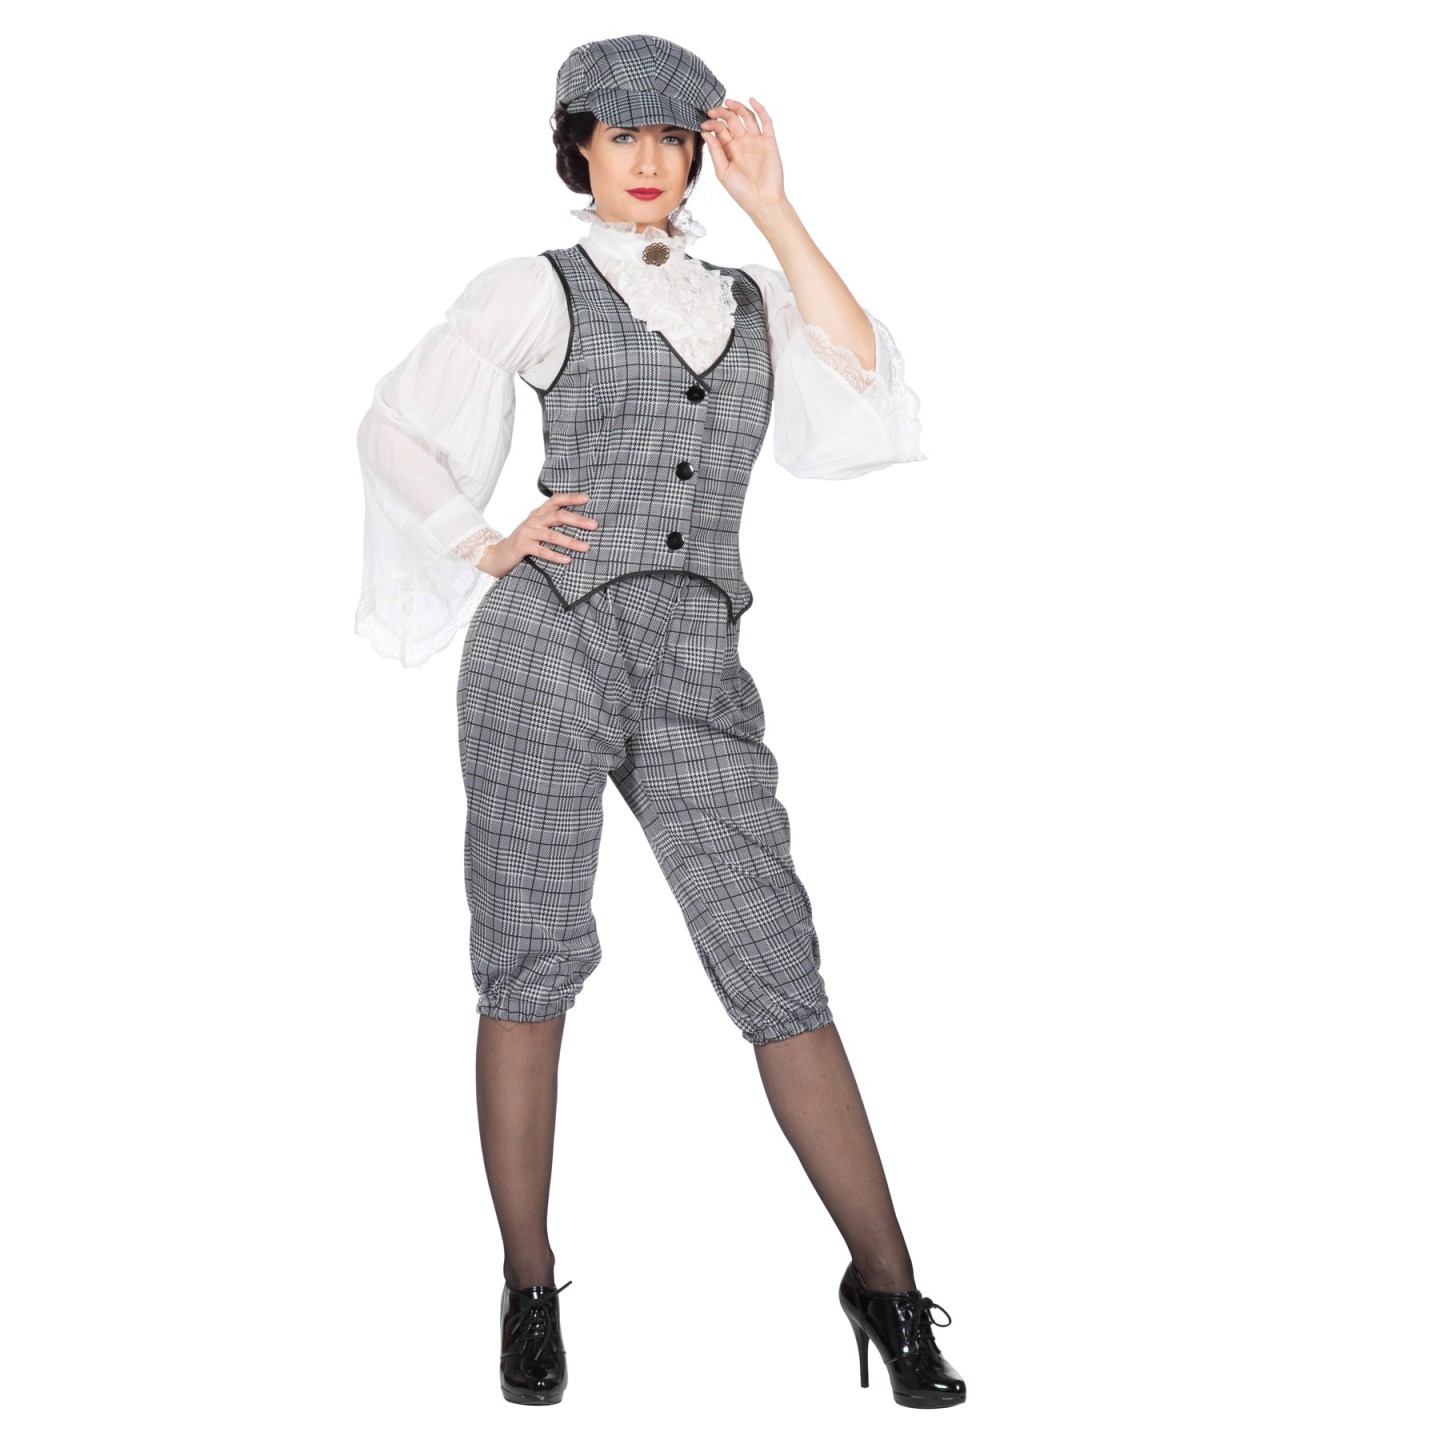 Concessie Beheer piek Peaky Blinders kostuum dames Lizzie | Jokershop.be - Jaren 20 kleding